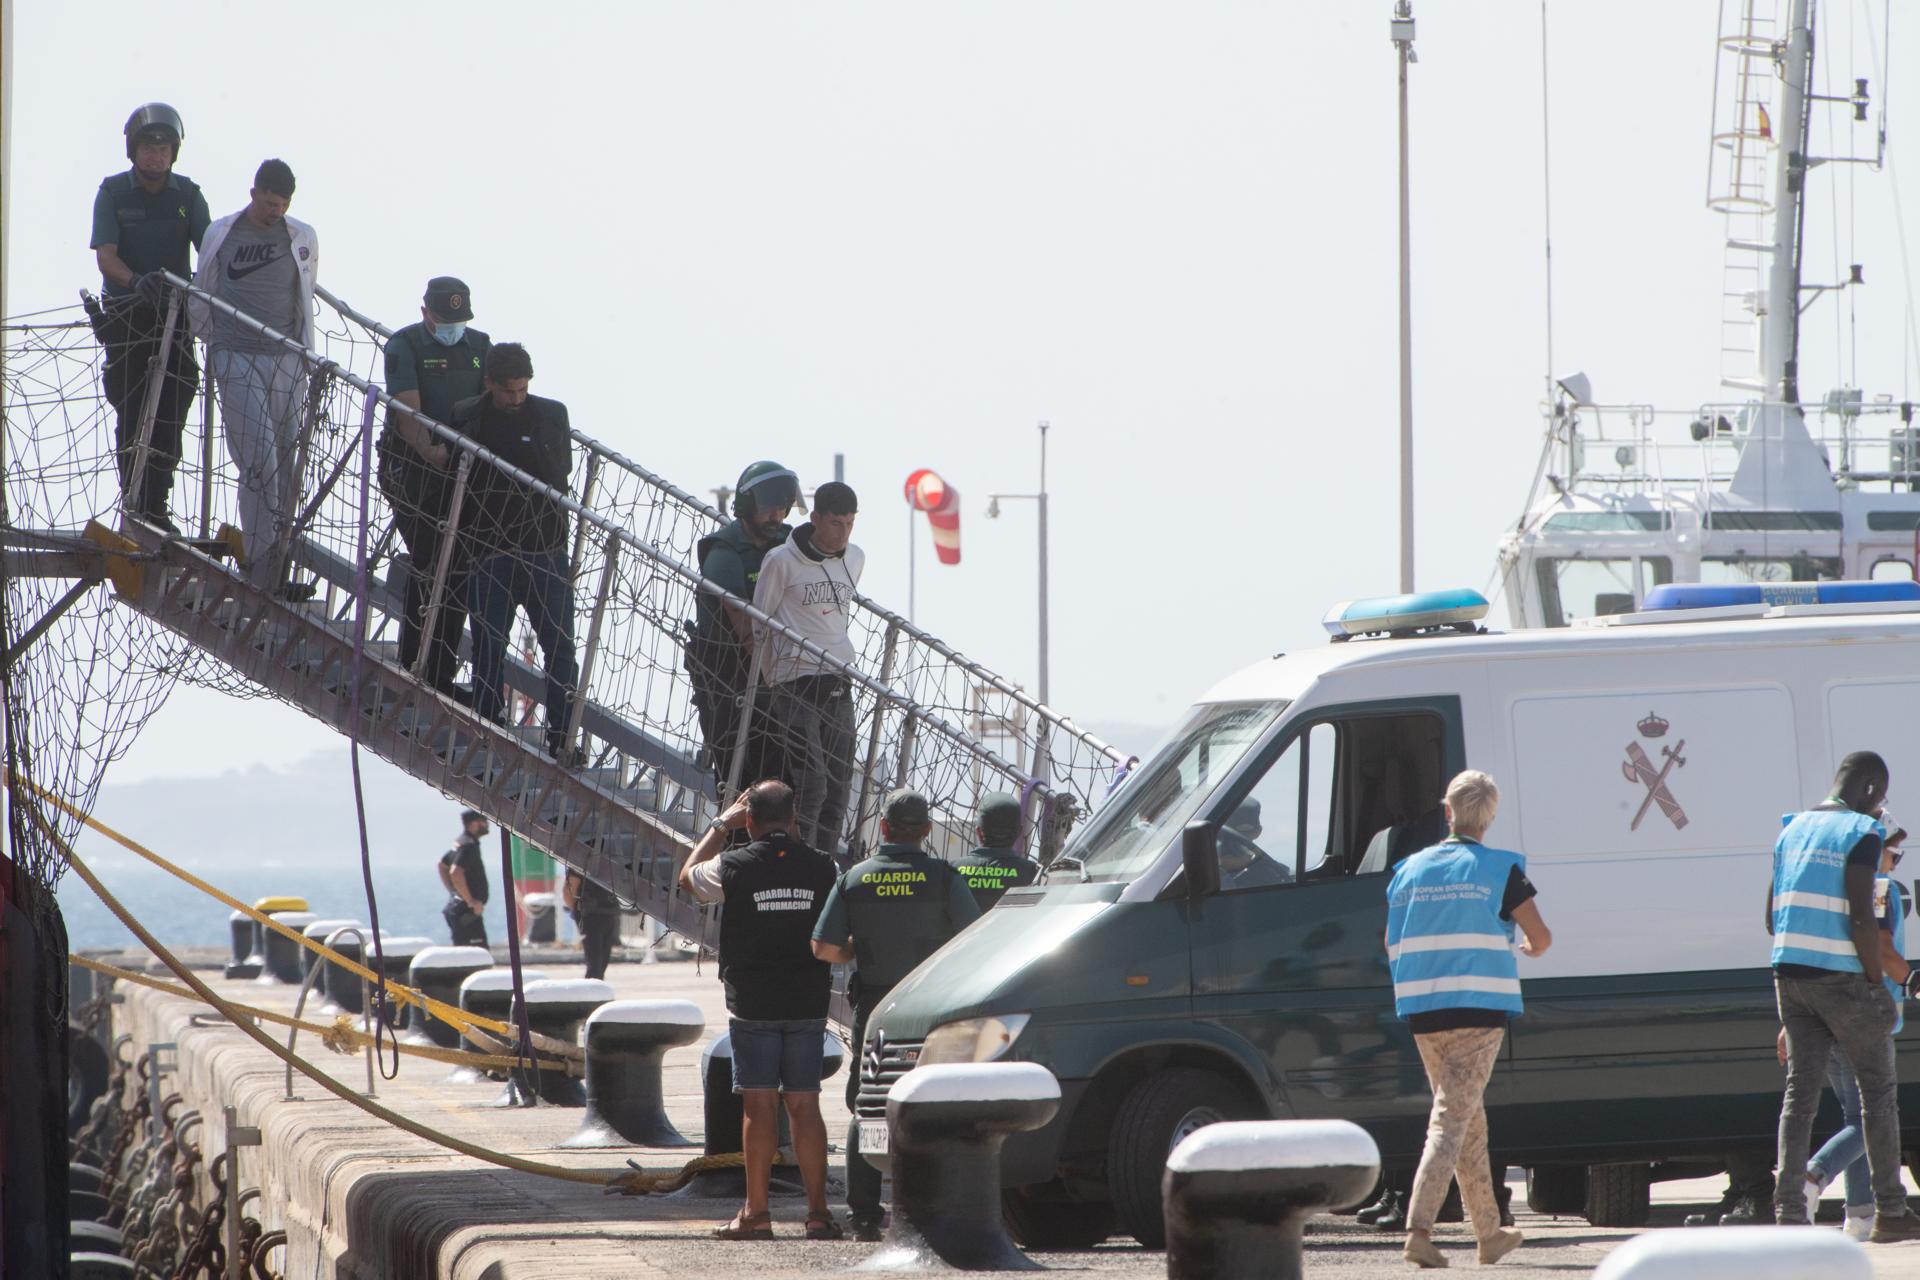 Desembarco de los 79 inmigrantes rescatados por el buque de Países Bajos Vos Pace, donde se amotinaron nueve personas y fueron detenidos por la Guardia Civil española acusados de piratería. EFE/Carlos de Saá